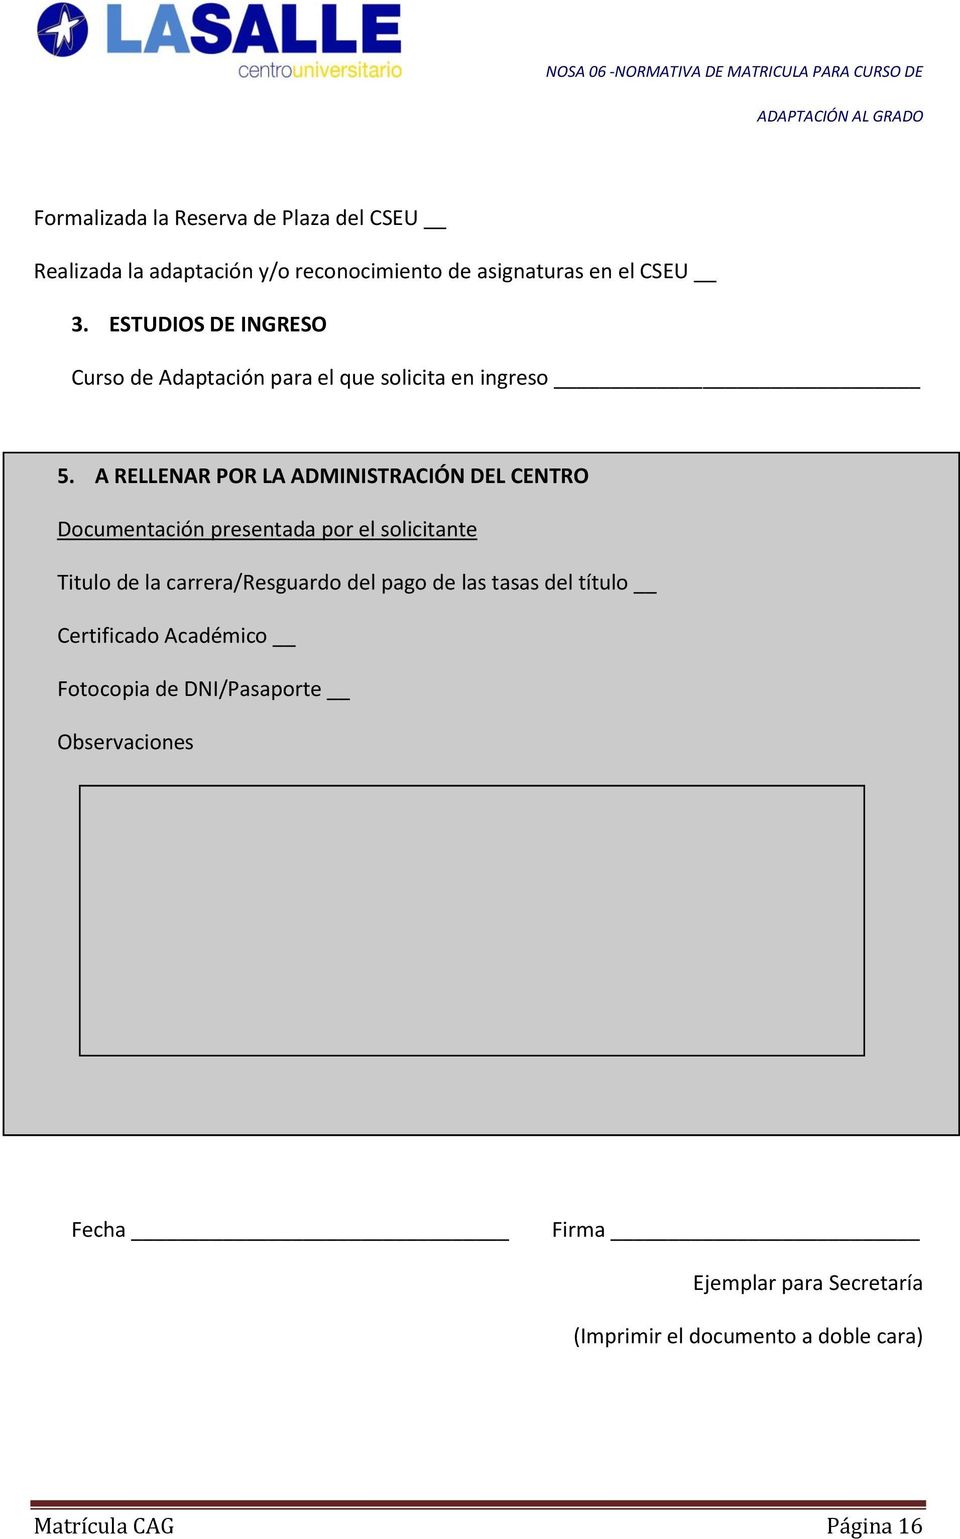 A RELLENAR POR LA ADMINISTRACIÓN DEL CENTRO Documentación presentada por el solicitante Titulo de la carrera/resguardo del